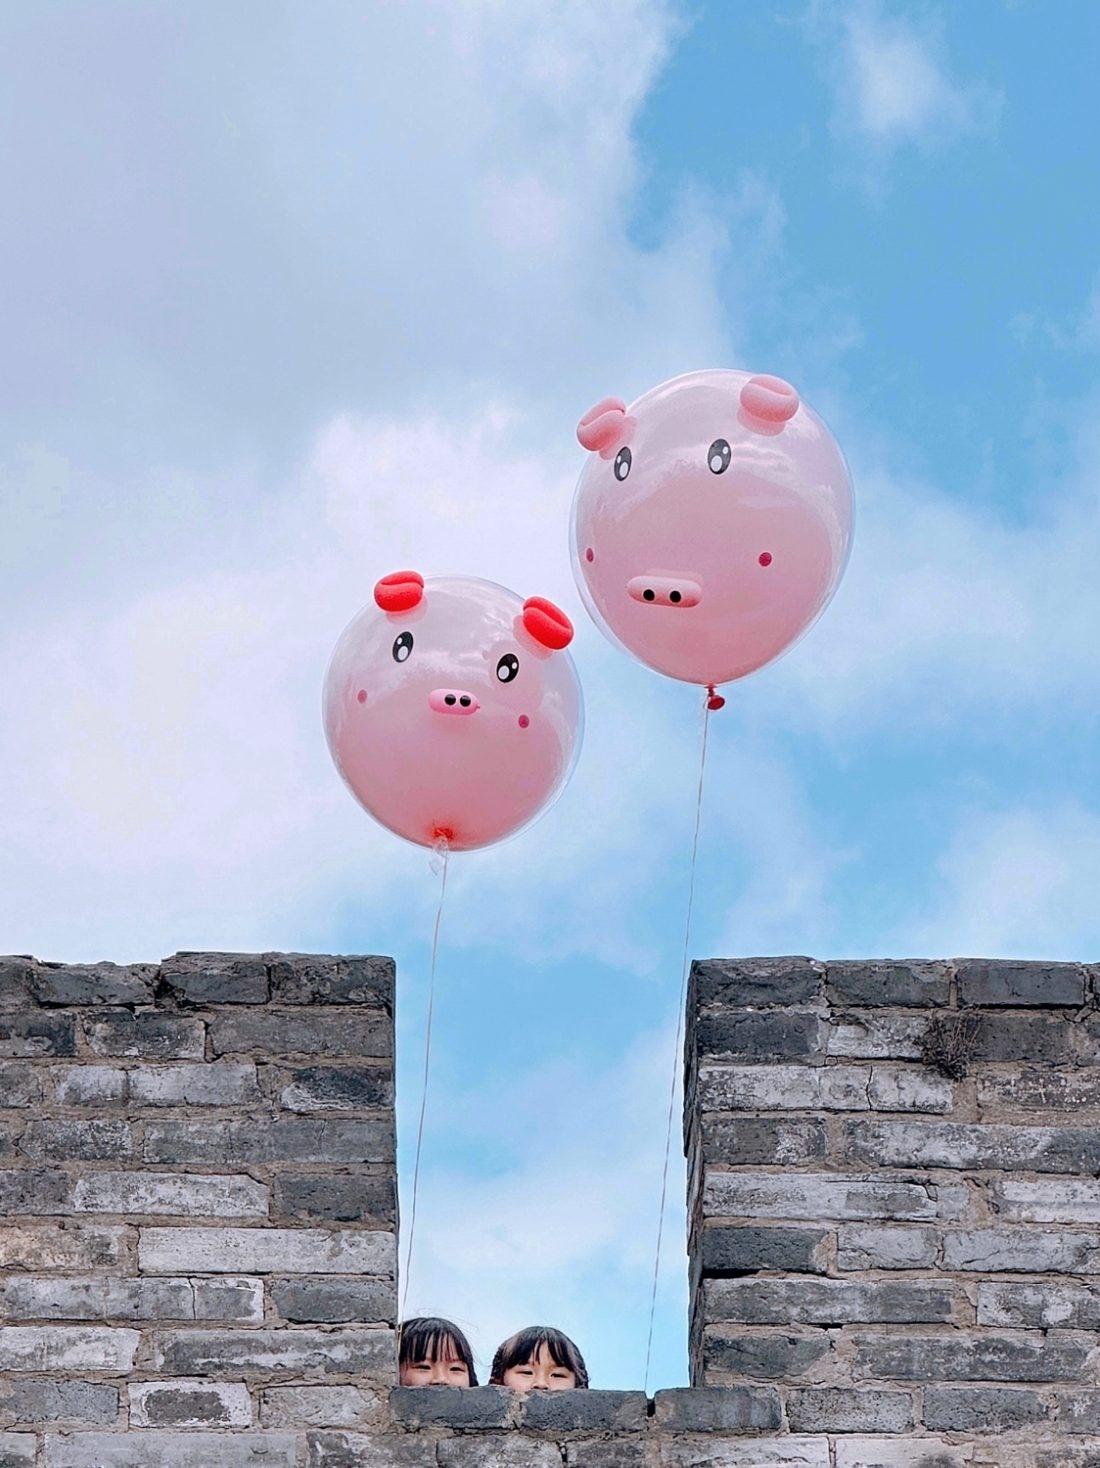 2º lugar da categoria Crianças: imagem destaca duas crianças segurando grandes balões de porquinho espionando por trás de um muro. O registro foi feito por Zhang Xiaojun com um iPhone 14 Pro Max, em Linhai Zhejiang. - Zhang Xiaojun/IPP Awards